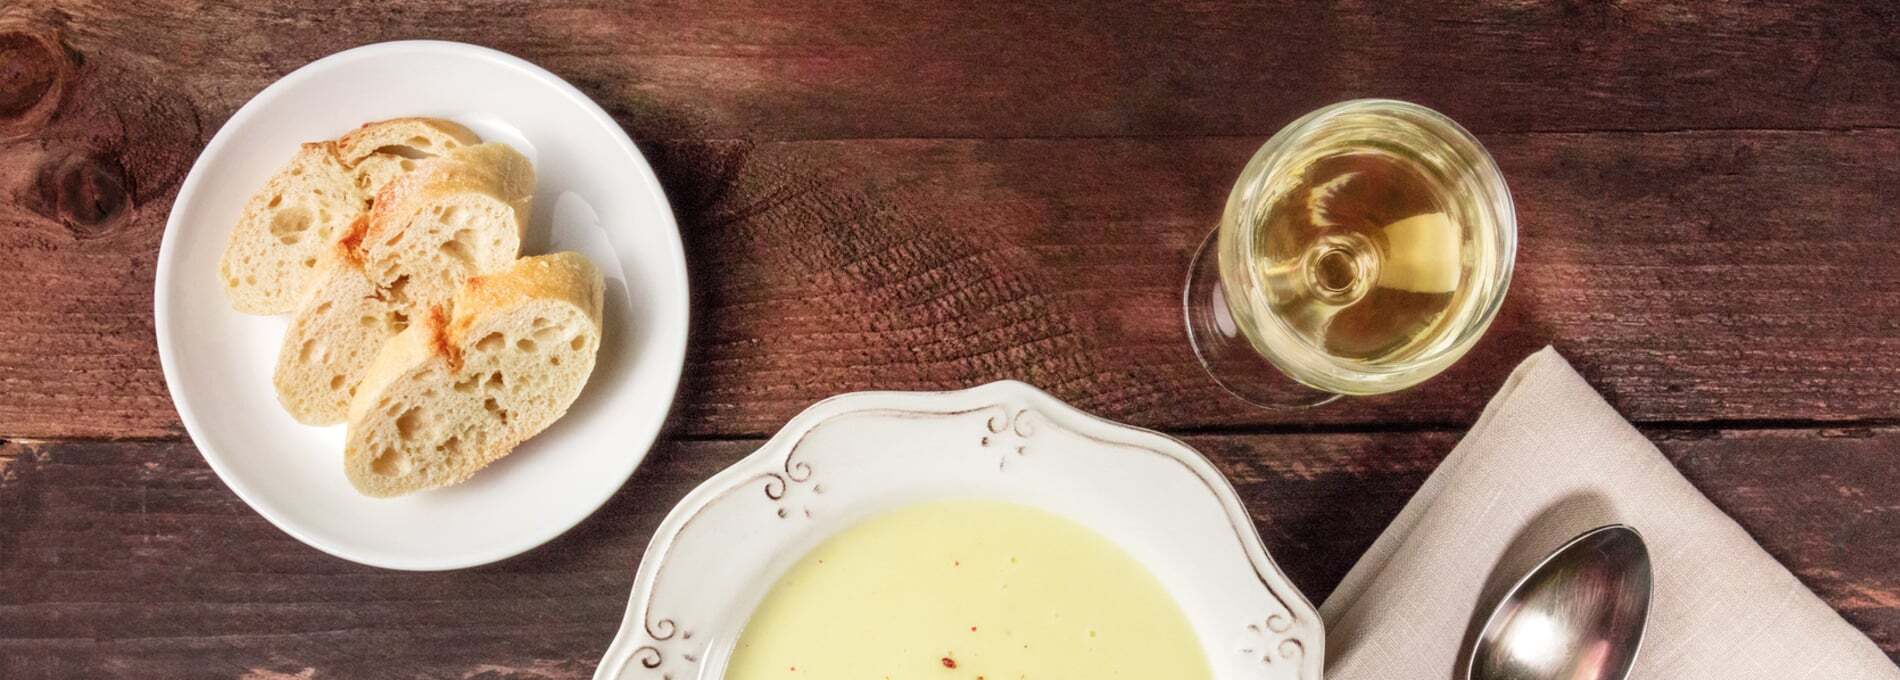 Südtiroler Weinsuppe - Das Rezept für den Klassiker